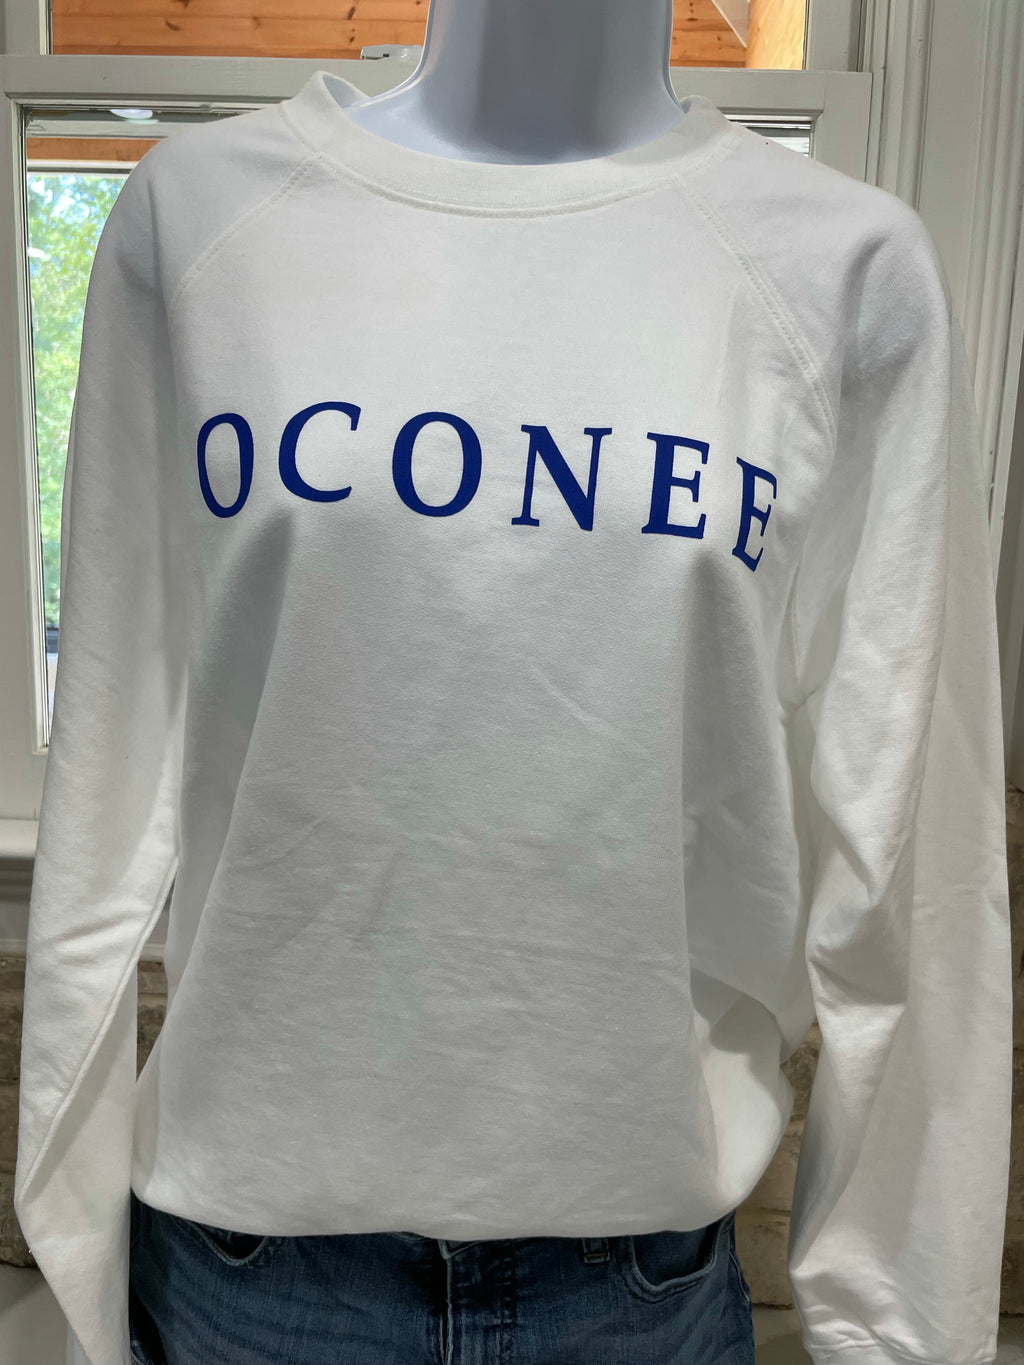 Oconee sweatshirt (seaside look)